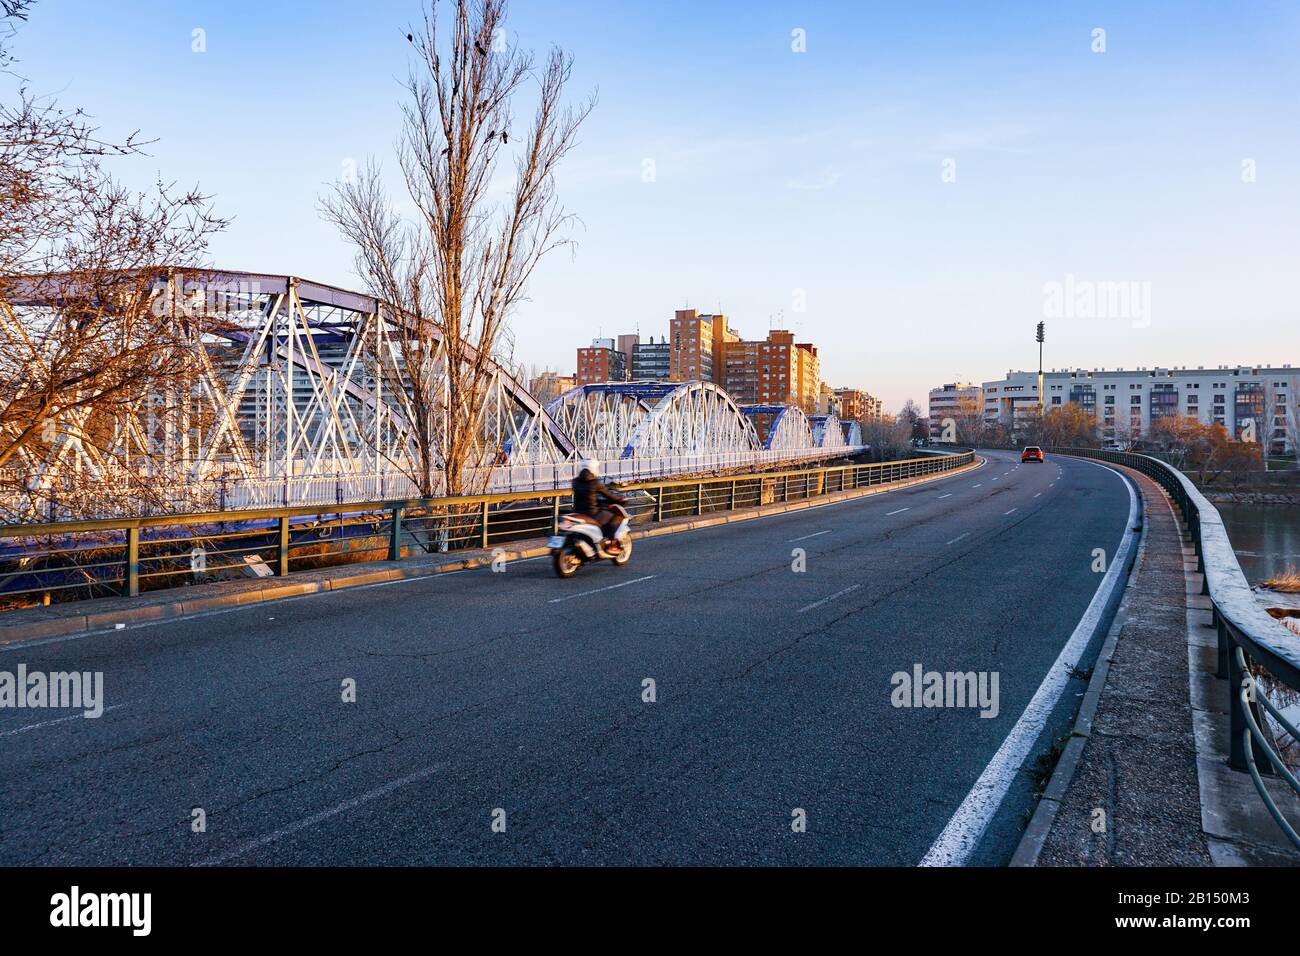 Puente de Hierro en moto. Iron Bridge by motorcycle Stock Photo